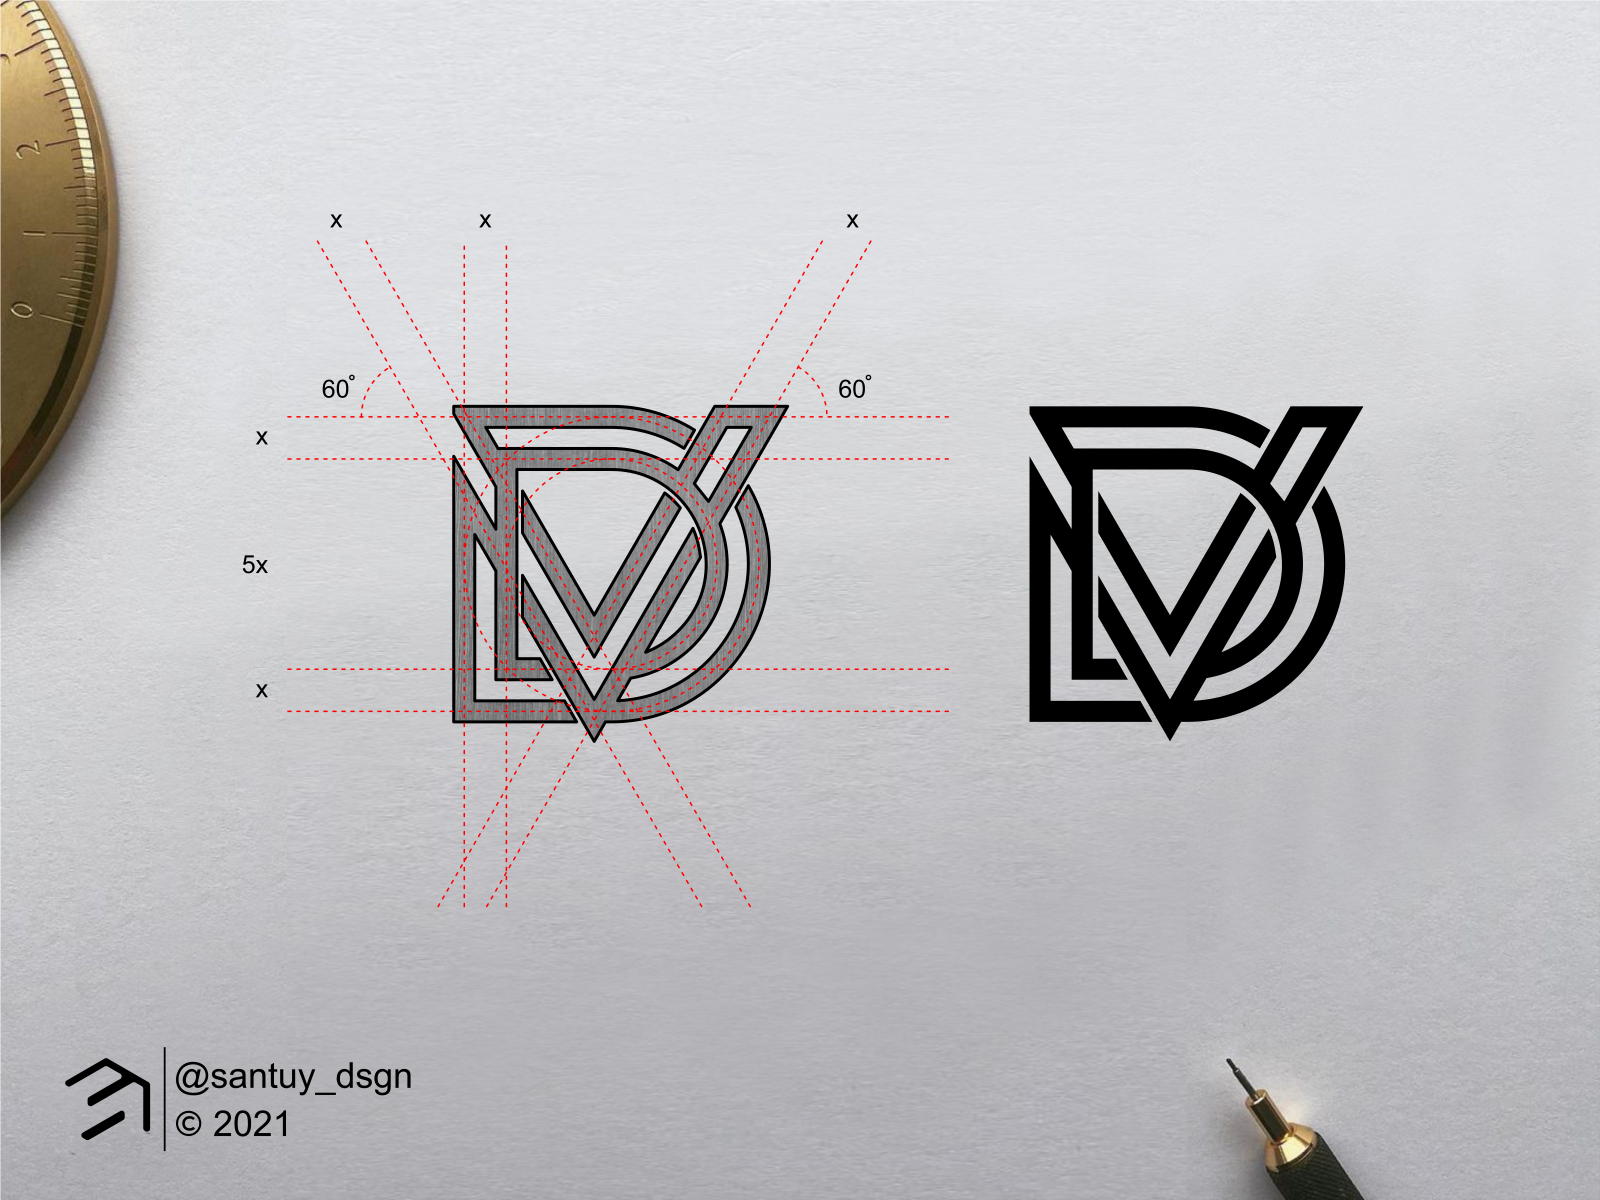 Red and black vd v d letter logo design creative Vector Image